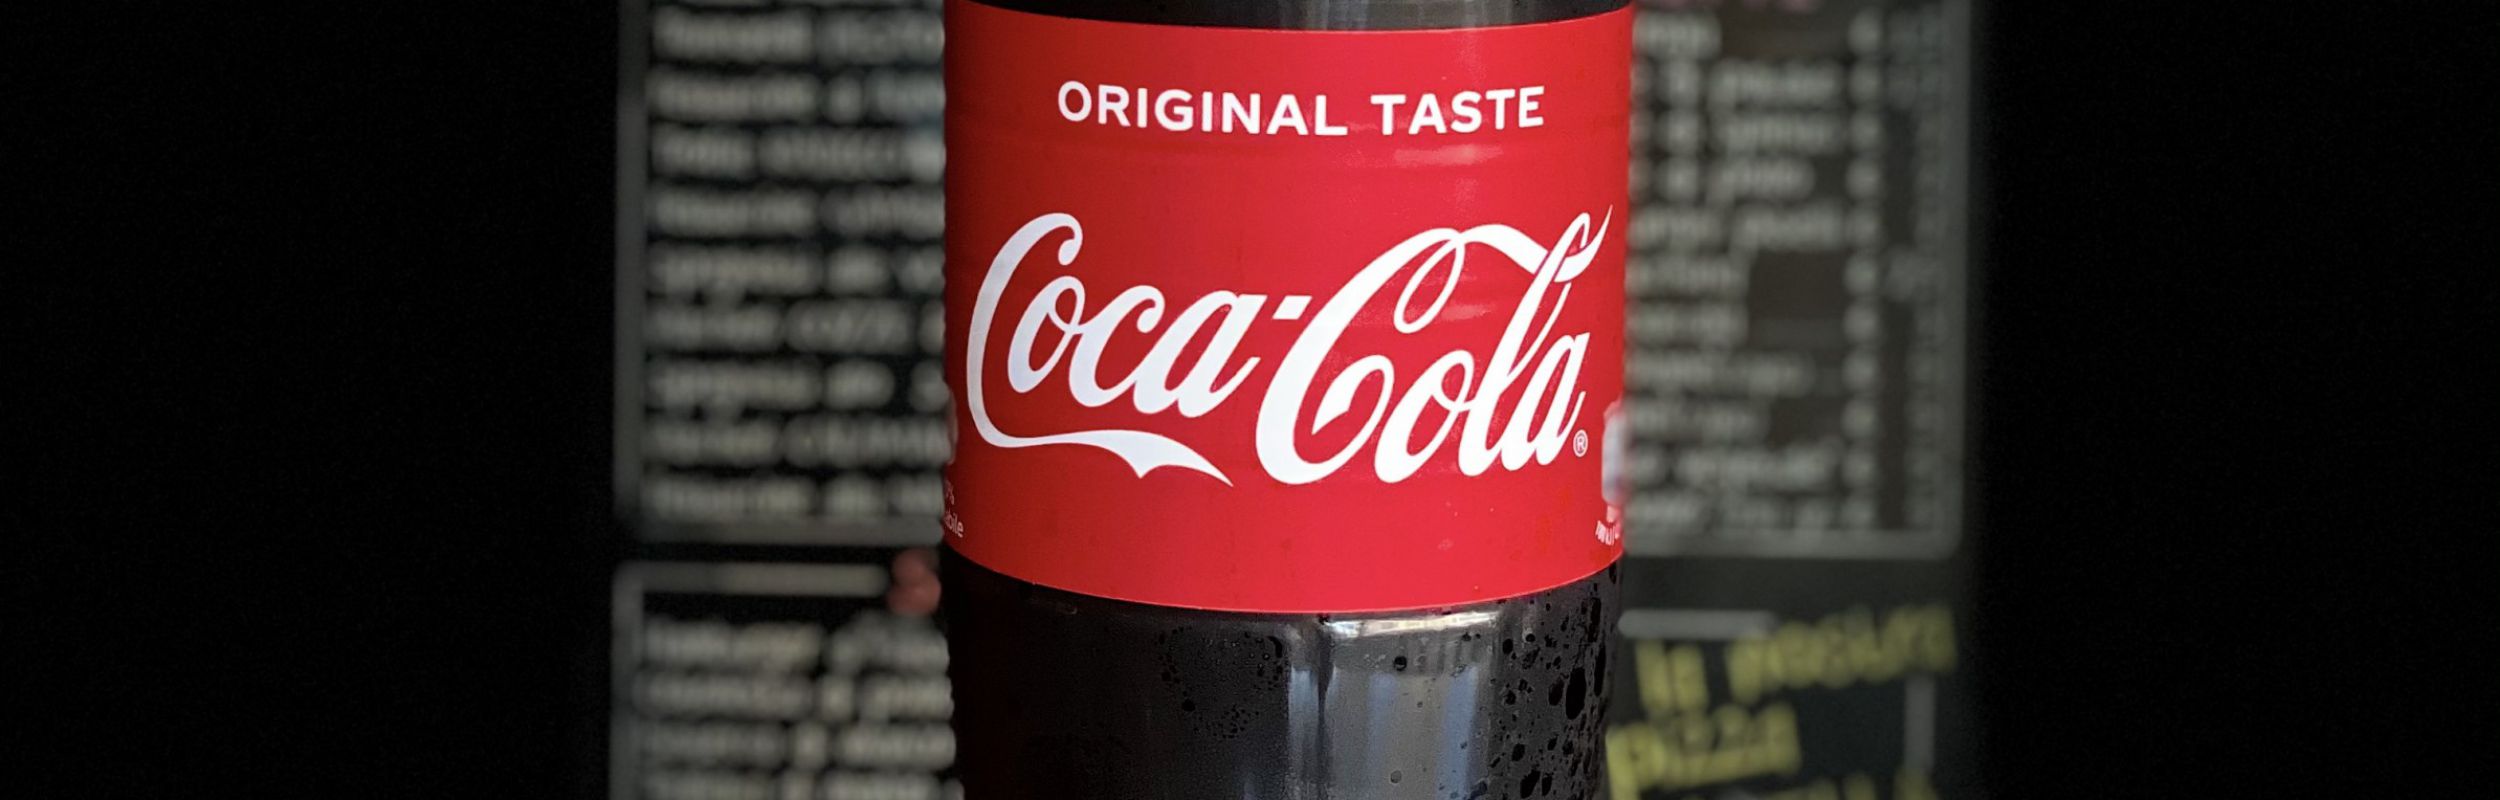 CocaCola 1, 5 L OMAGGIO - codice coupon: COCALITRO - Aggiungi quest'articolo al tuo ordine e inserisci il codice COCALITRO nel campo coupon al checkout.
Offerta...